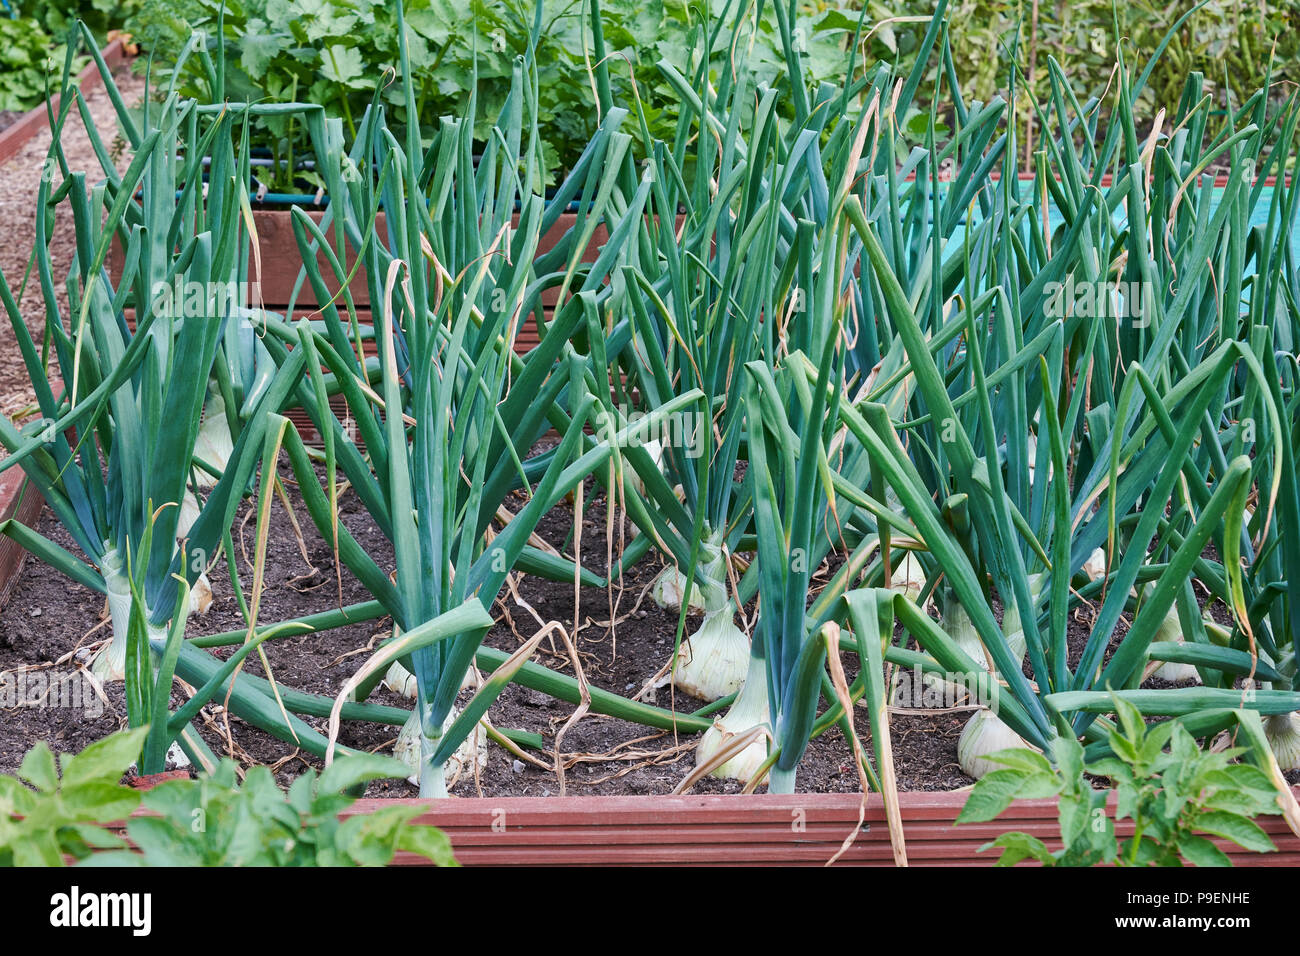 Un tipo de cebolla española, Ailsa Craig (Allium cepa "Ailsa Craig") se cultiva a partir de semillas y produce grandes cebollas que almacene y mantenga bien. Foto de stock